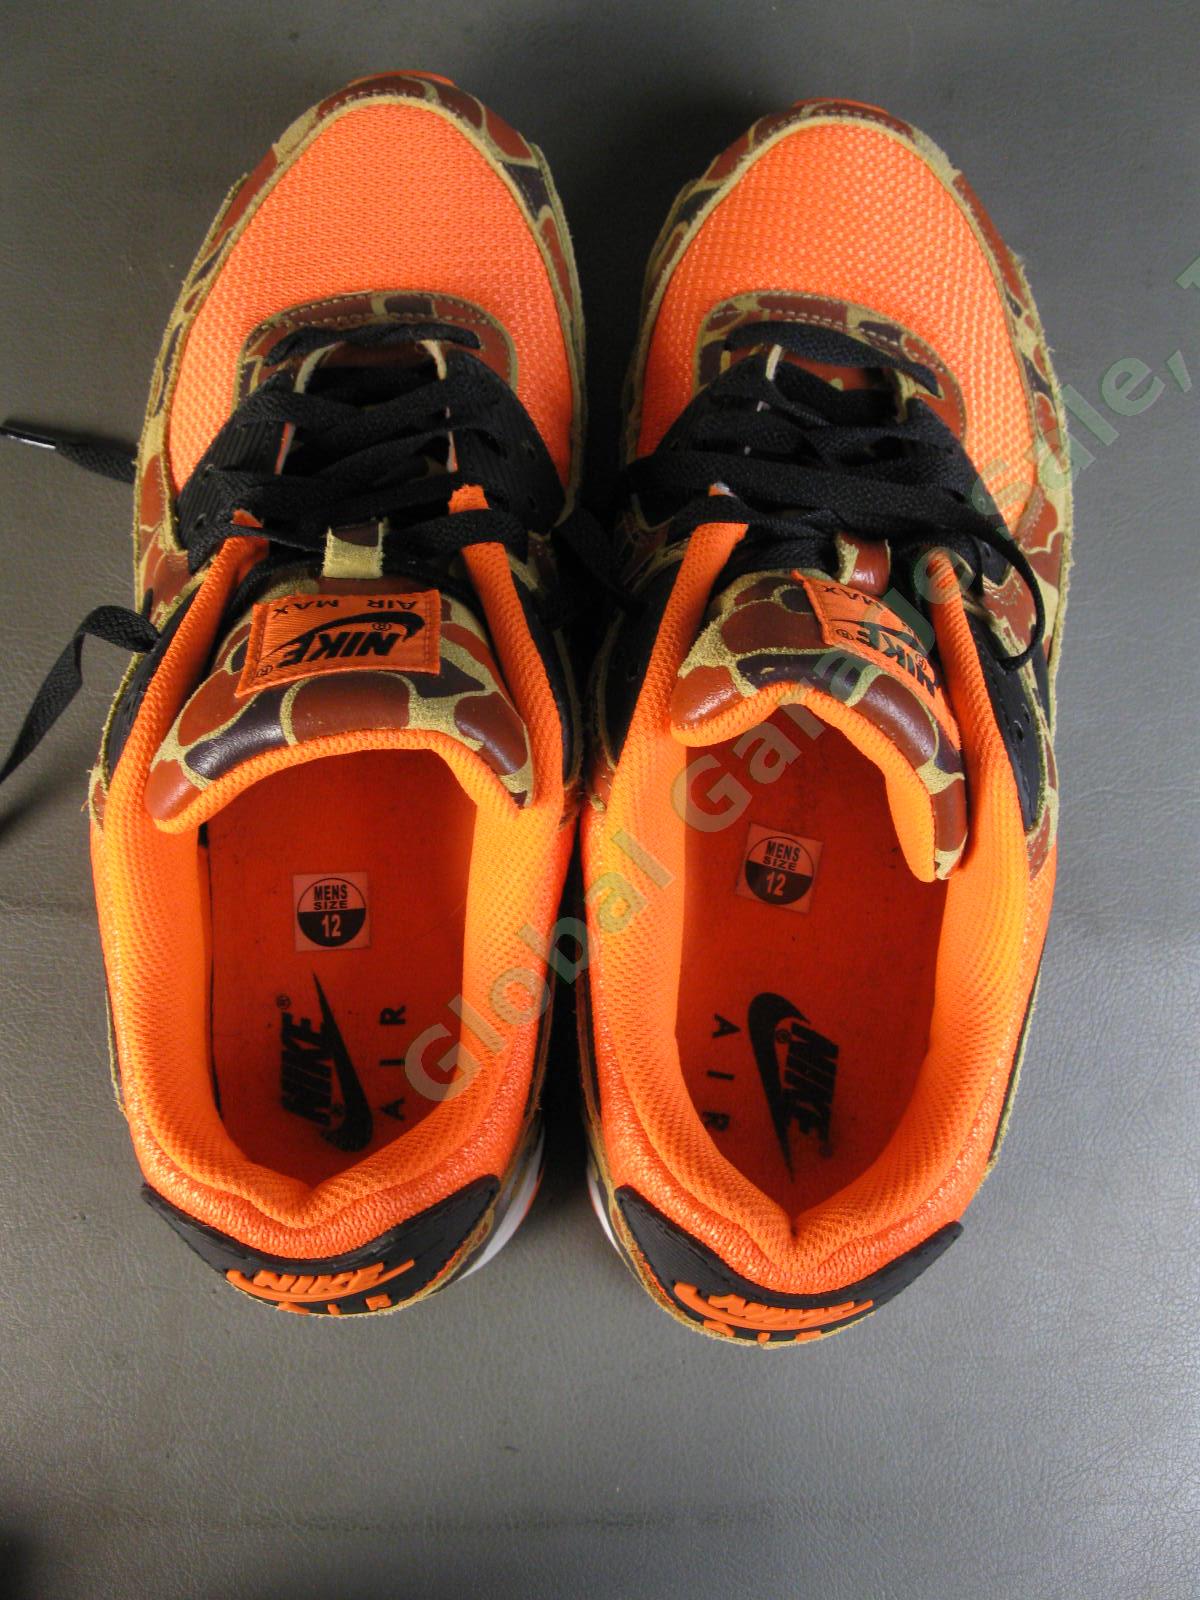 Nike Air Max 90 Orange Duck Camo Shoes CW4039-800 US Men Size 12 Excellent Shape 5